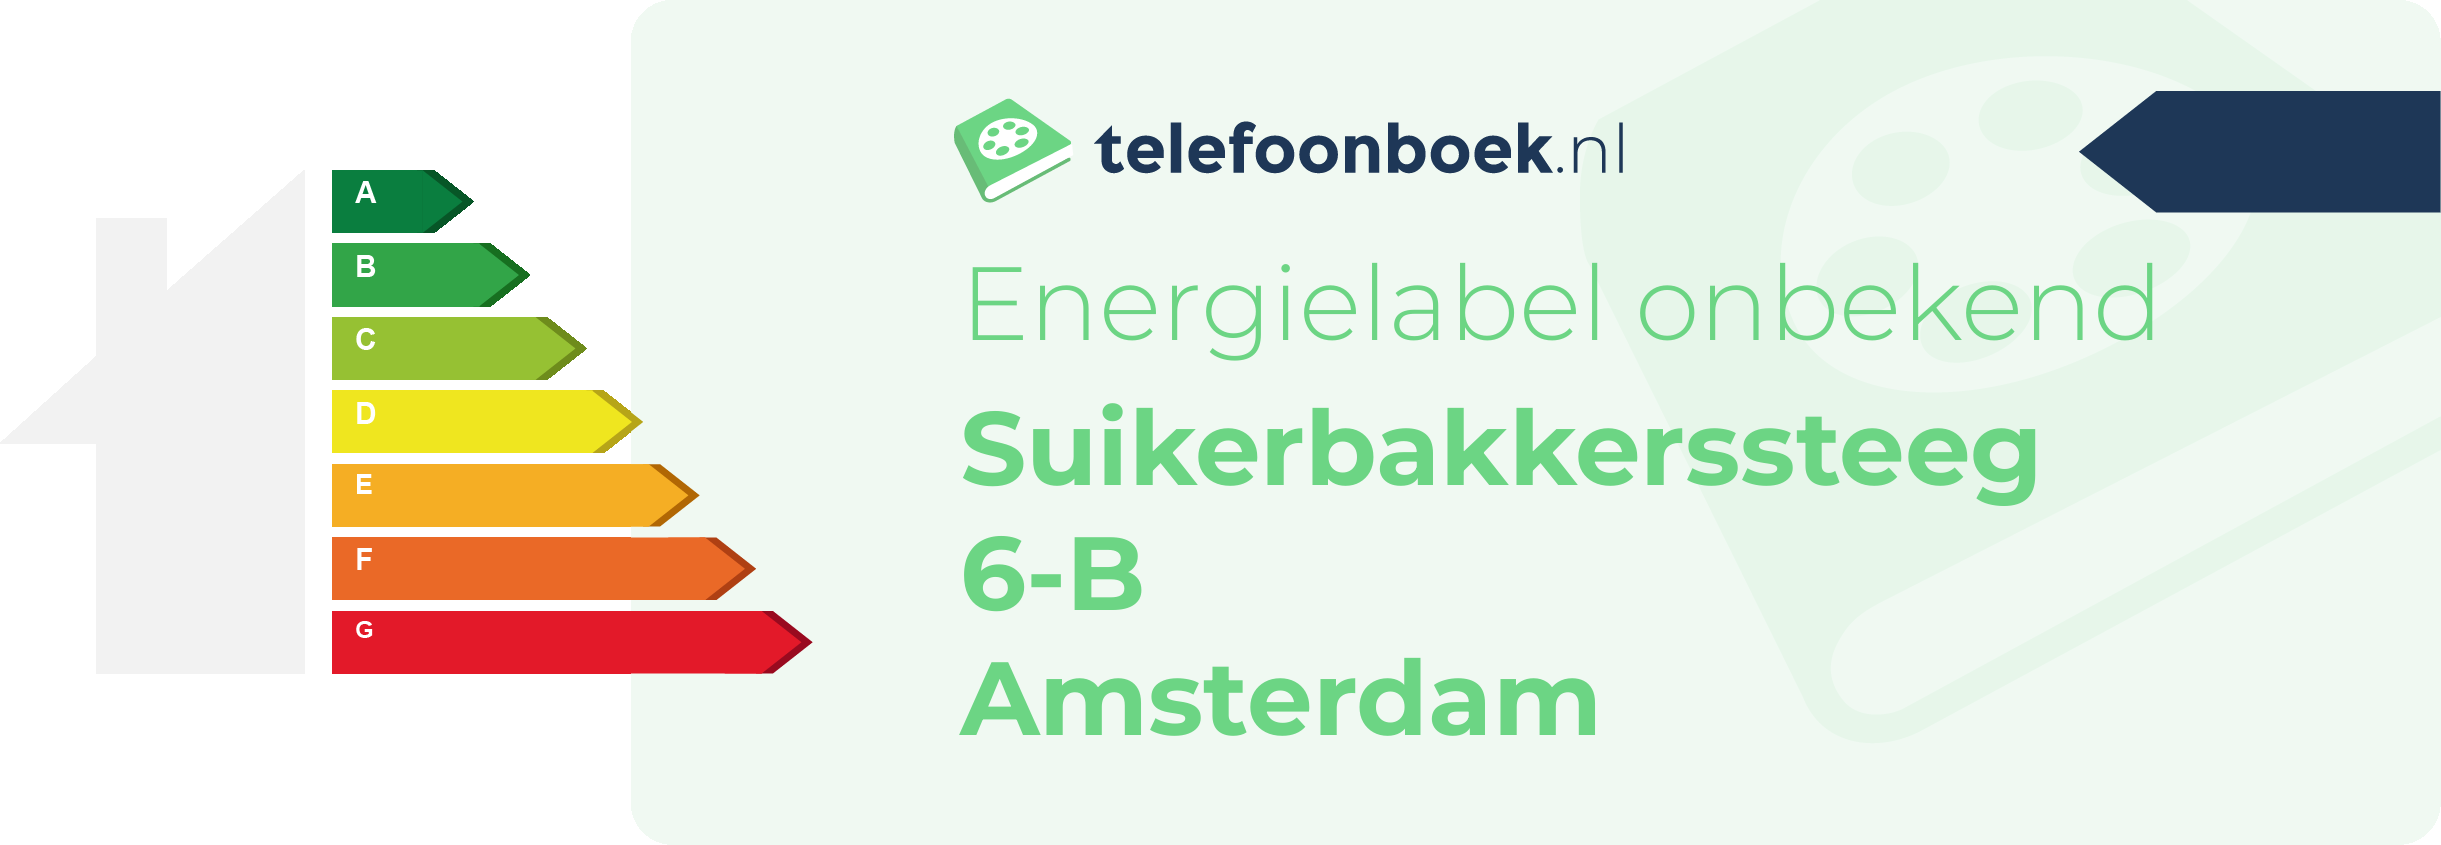 Energielabel Suikerbakkerssteeg 6-B Amsterdam